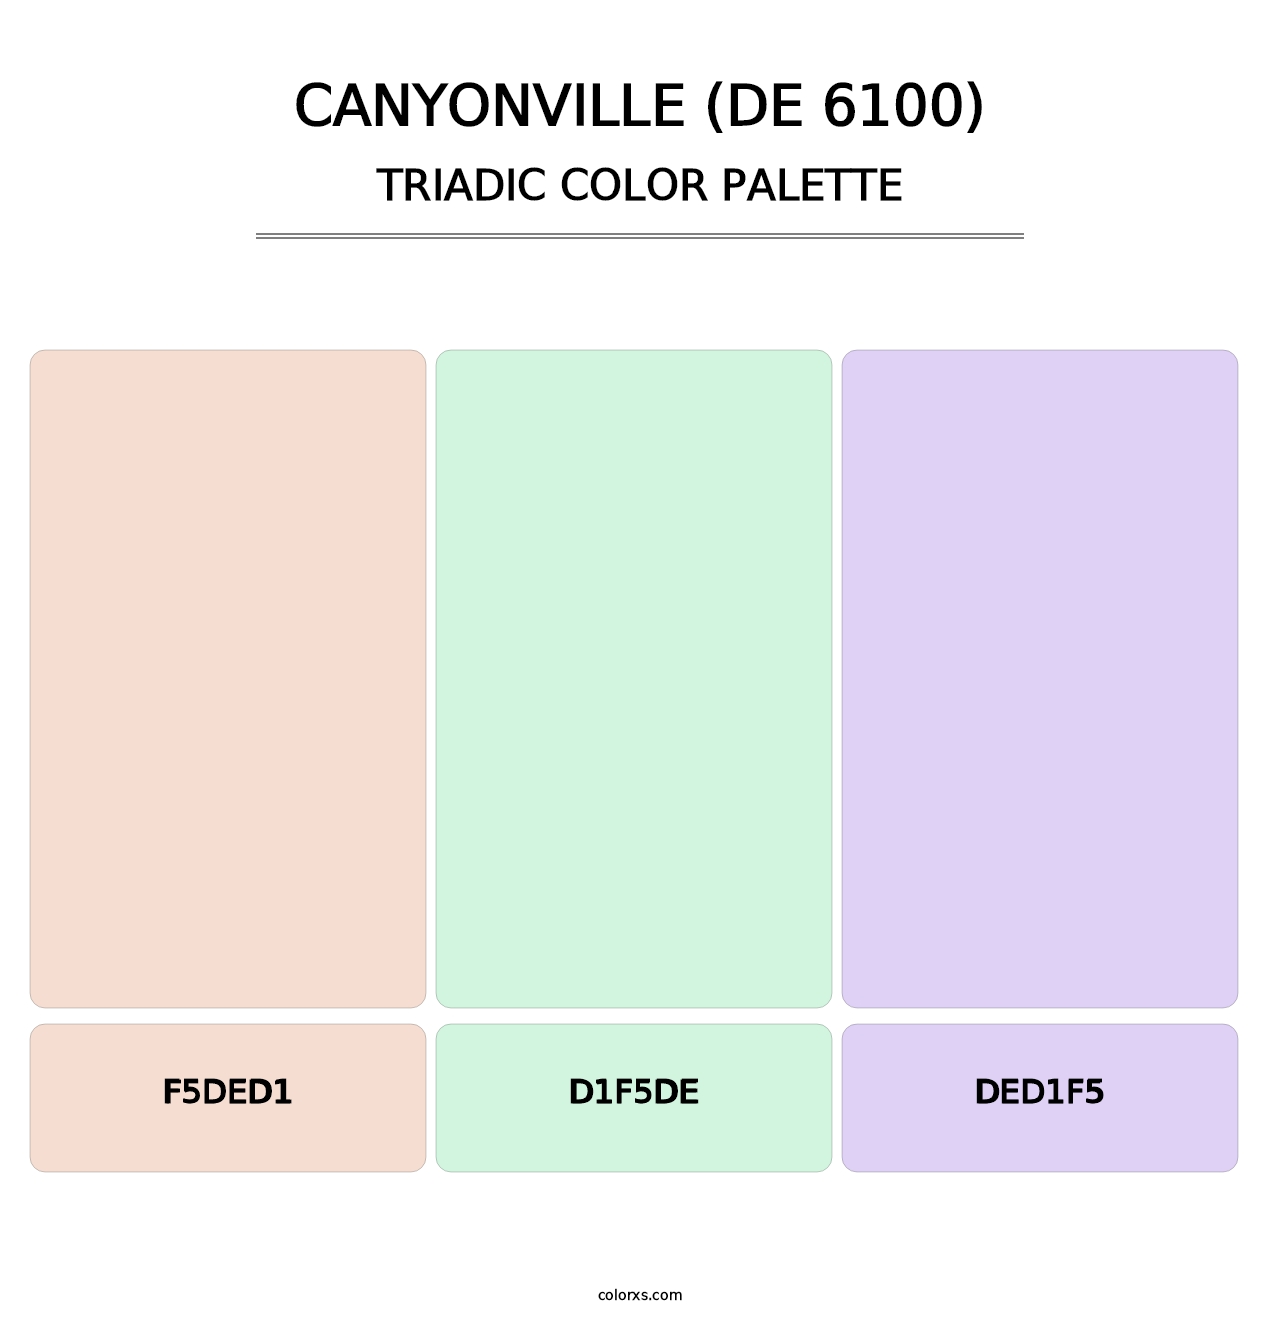 Canyonville (DE 6100) - Triadic Color Palette